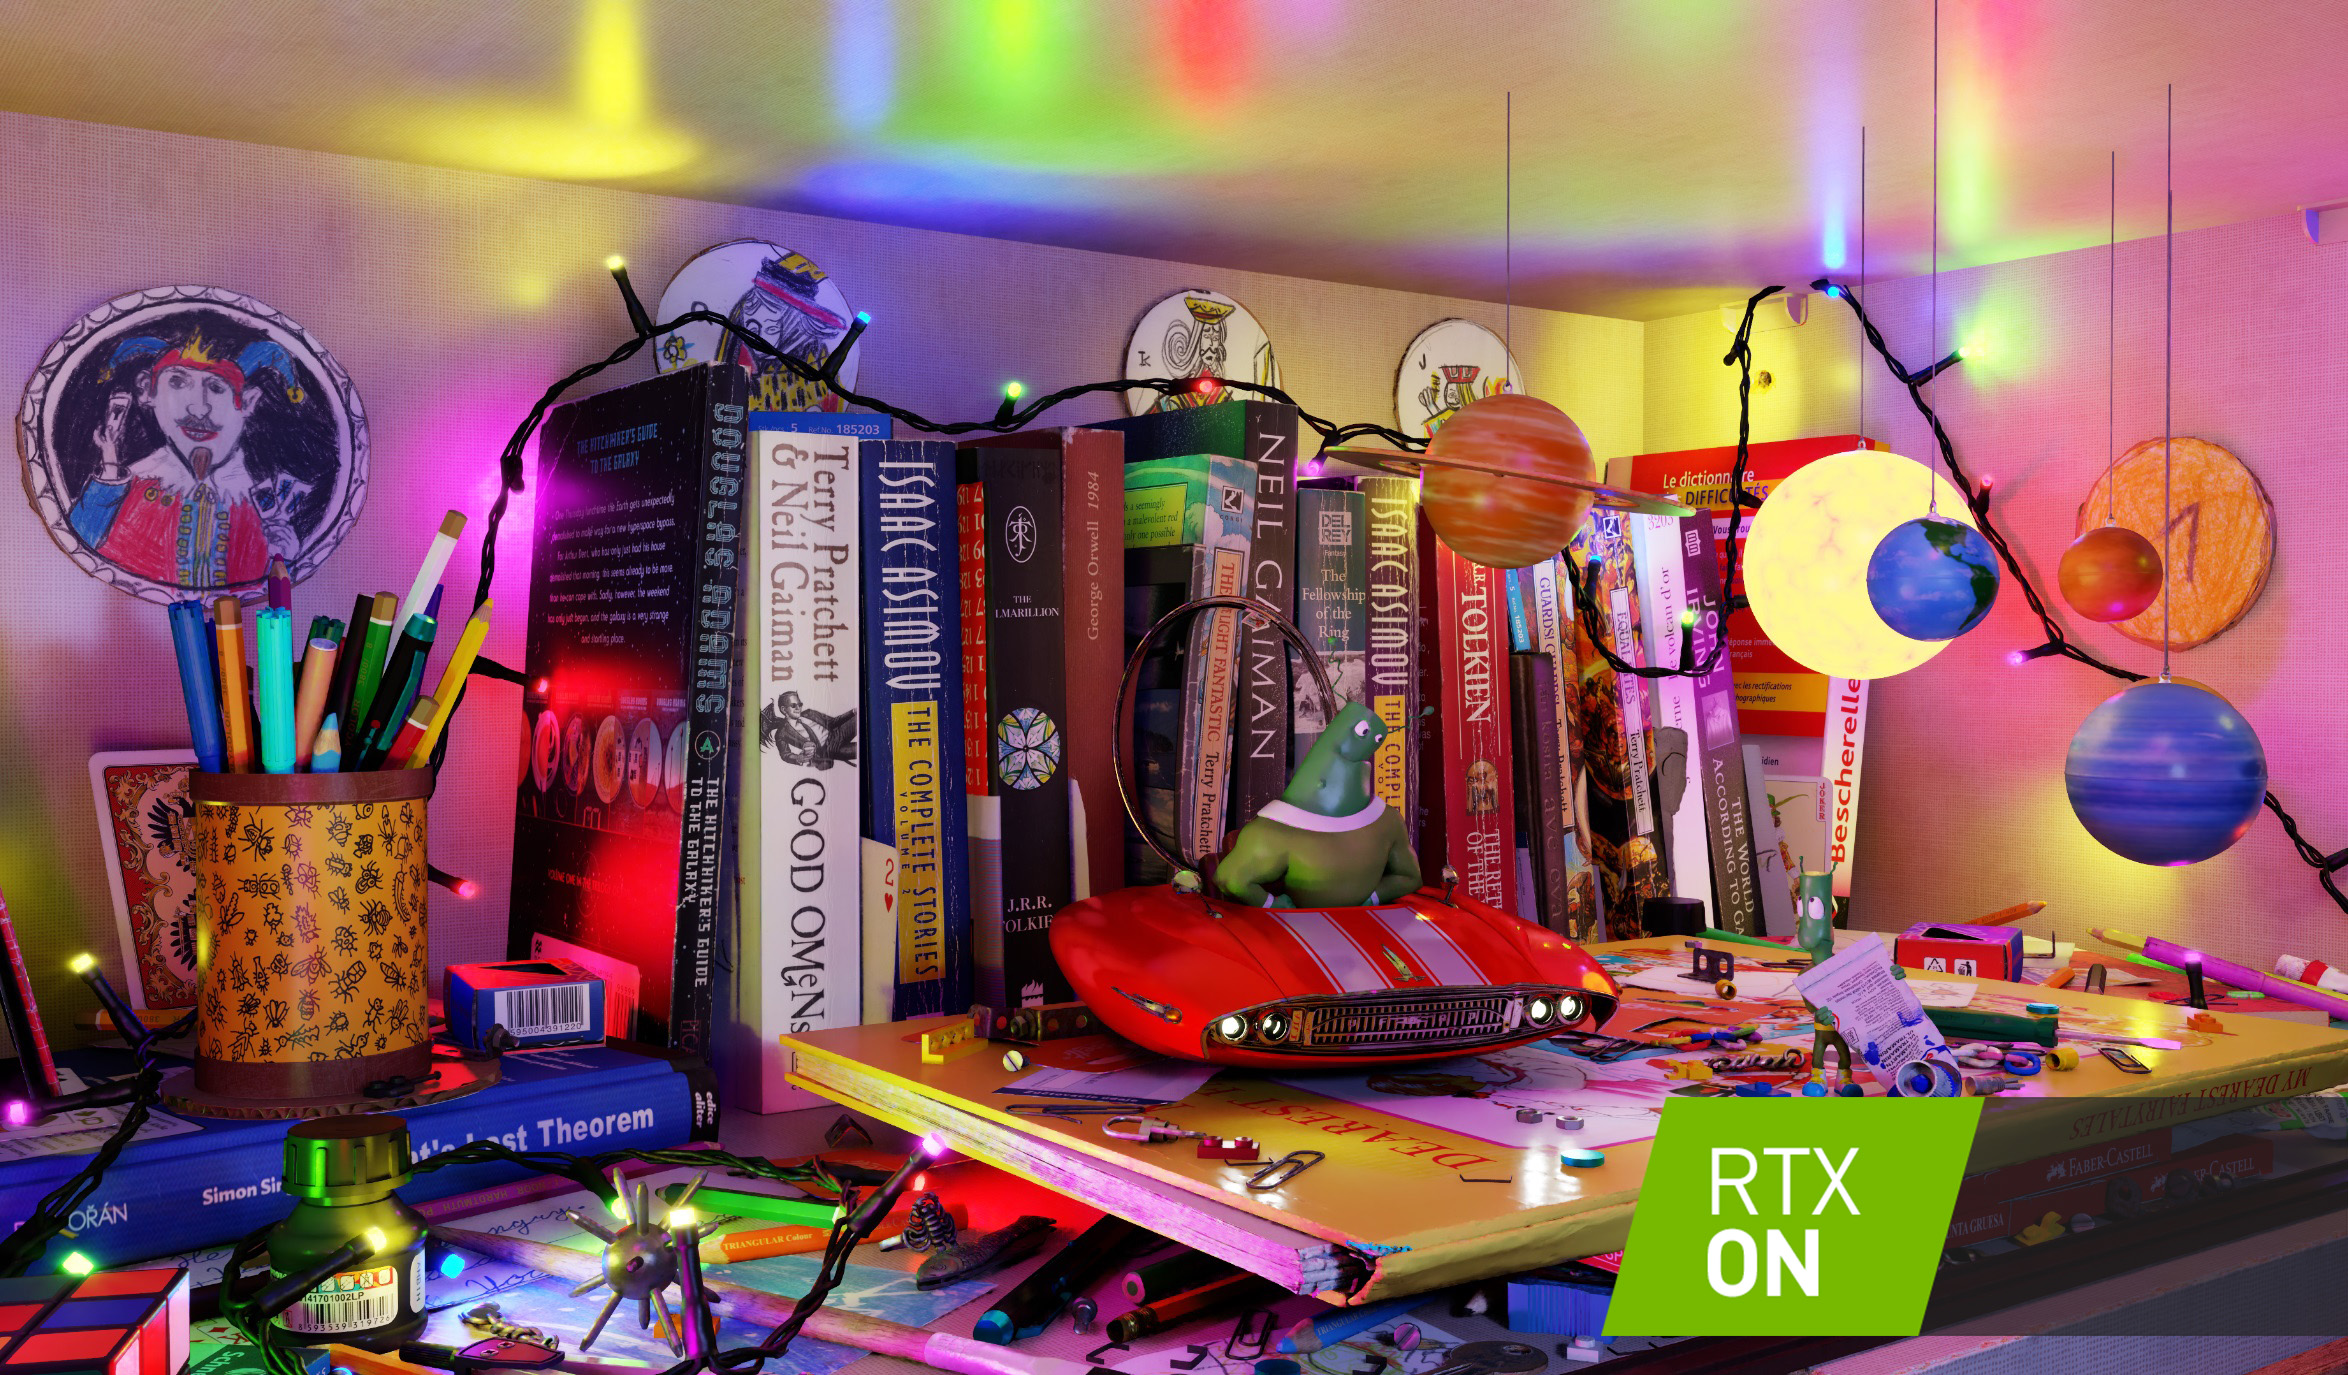 打开 RTXDI 后，可以实时光线追踪多达数百万个动态光源。